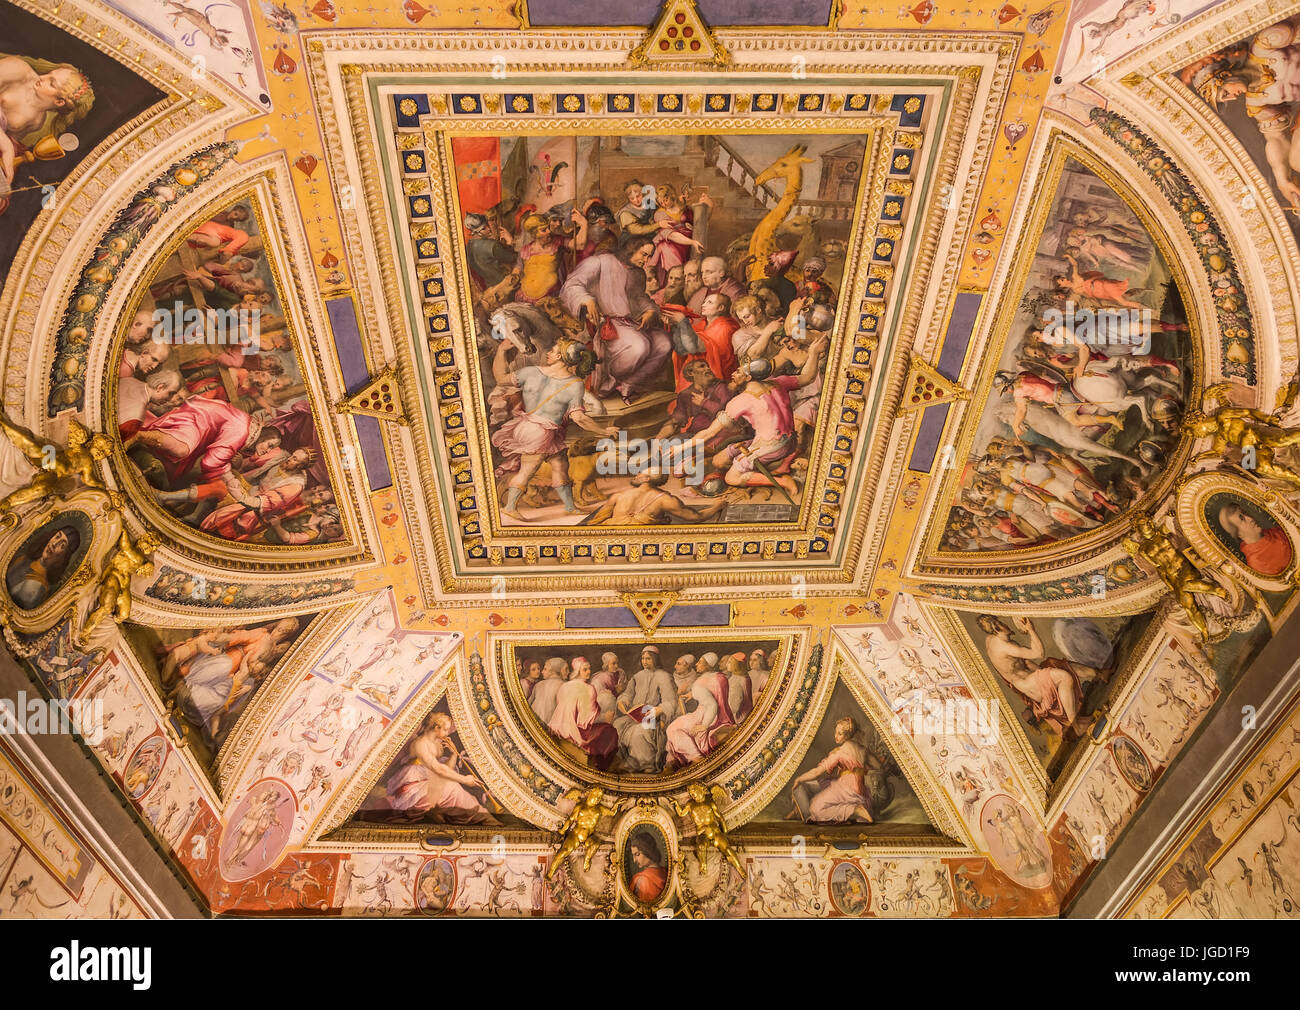 Florenz, Italien - 26. September 2014: die Fresken an der Decke eines der Zimmer im Palazzo Vecchio. Florenz. Italien Stockfoto